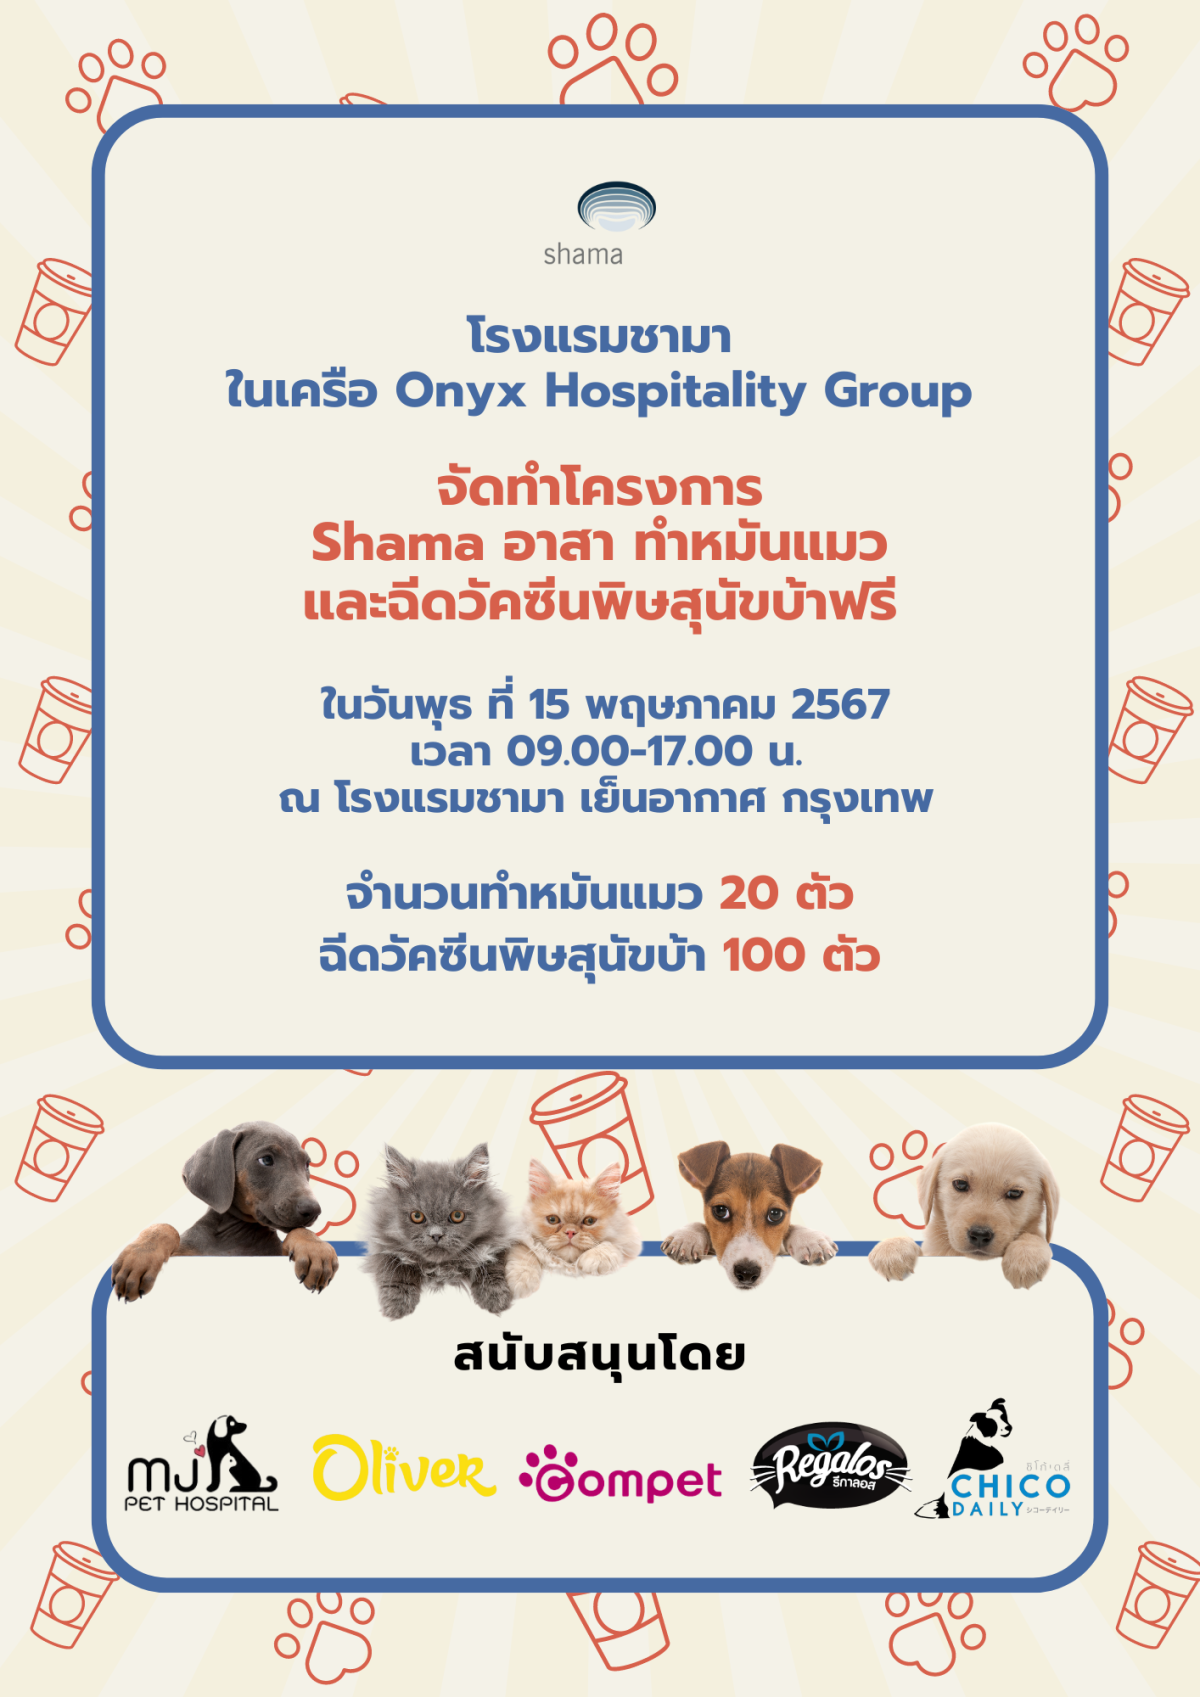 Shama Yen-Akat Bangkok โรงแรม Pet Friendly ย่านสาทร เปิดโครงการ Shama อาสา ทำหมันแมวและฉีดวัคซีนพิษสุนัขบ้าฟรี